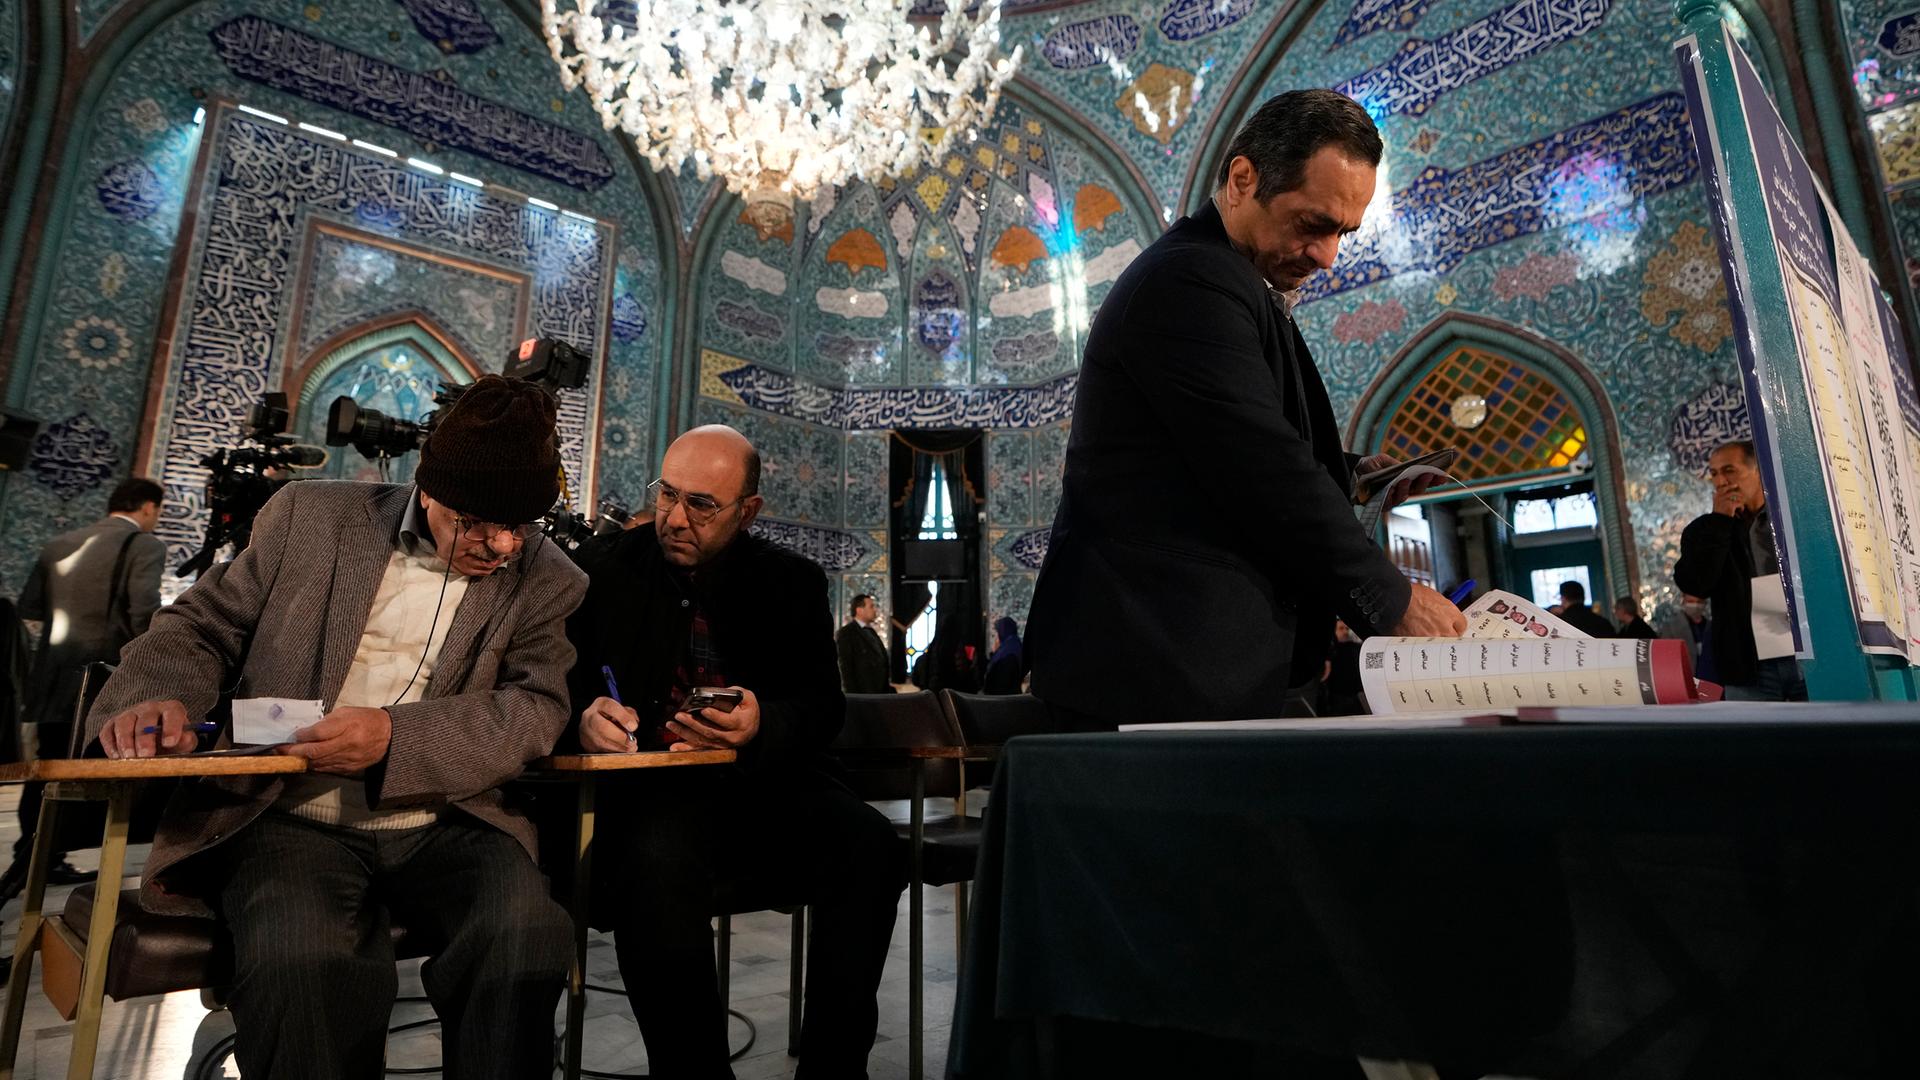 Das Foto zeigt Menschen im Iran, die ihre Stimme bei den Wahlen zum Parlament und zum Expertenrat abgeben.